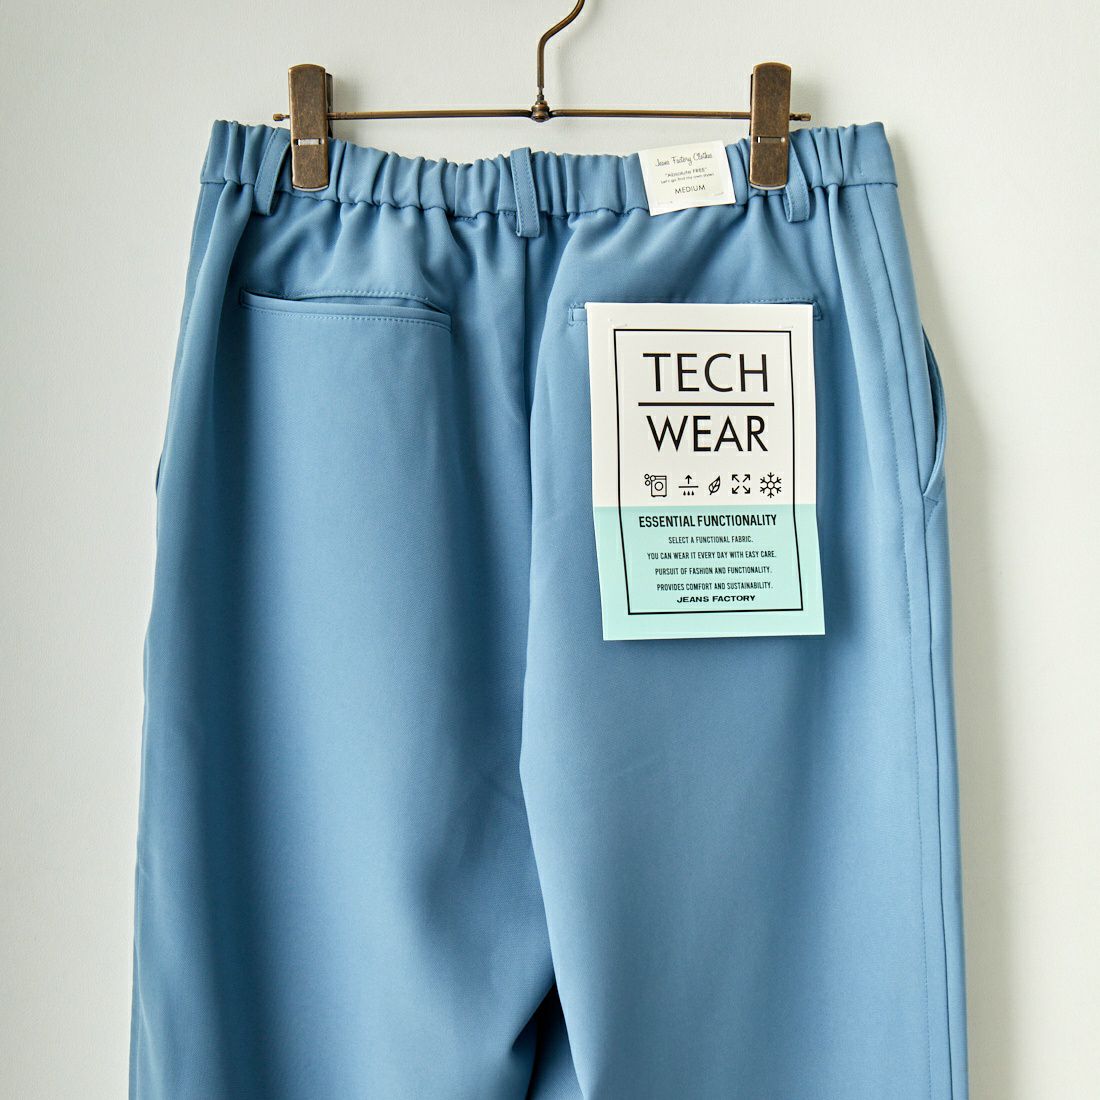 Jeans Factory Clothes [ジーンズファクトリークローズ] TECH カルゼワイドテーパードパンツ [EPC-31501] 2 BLUE